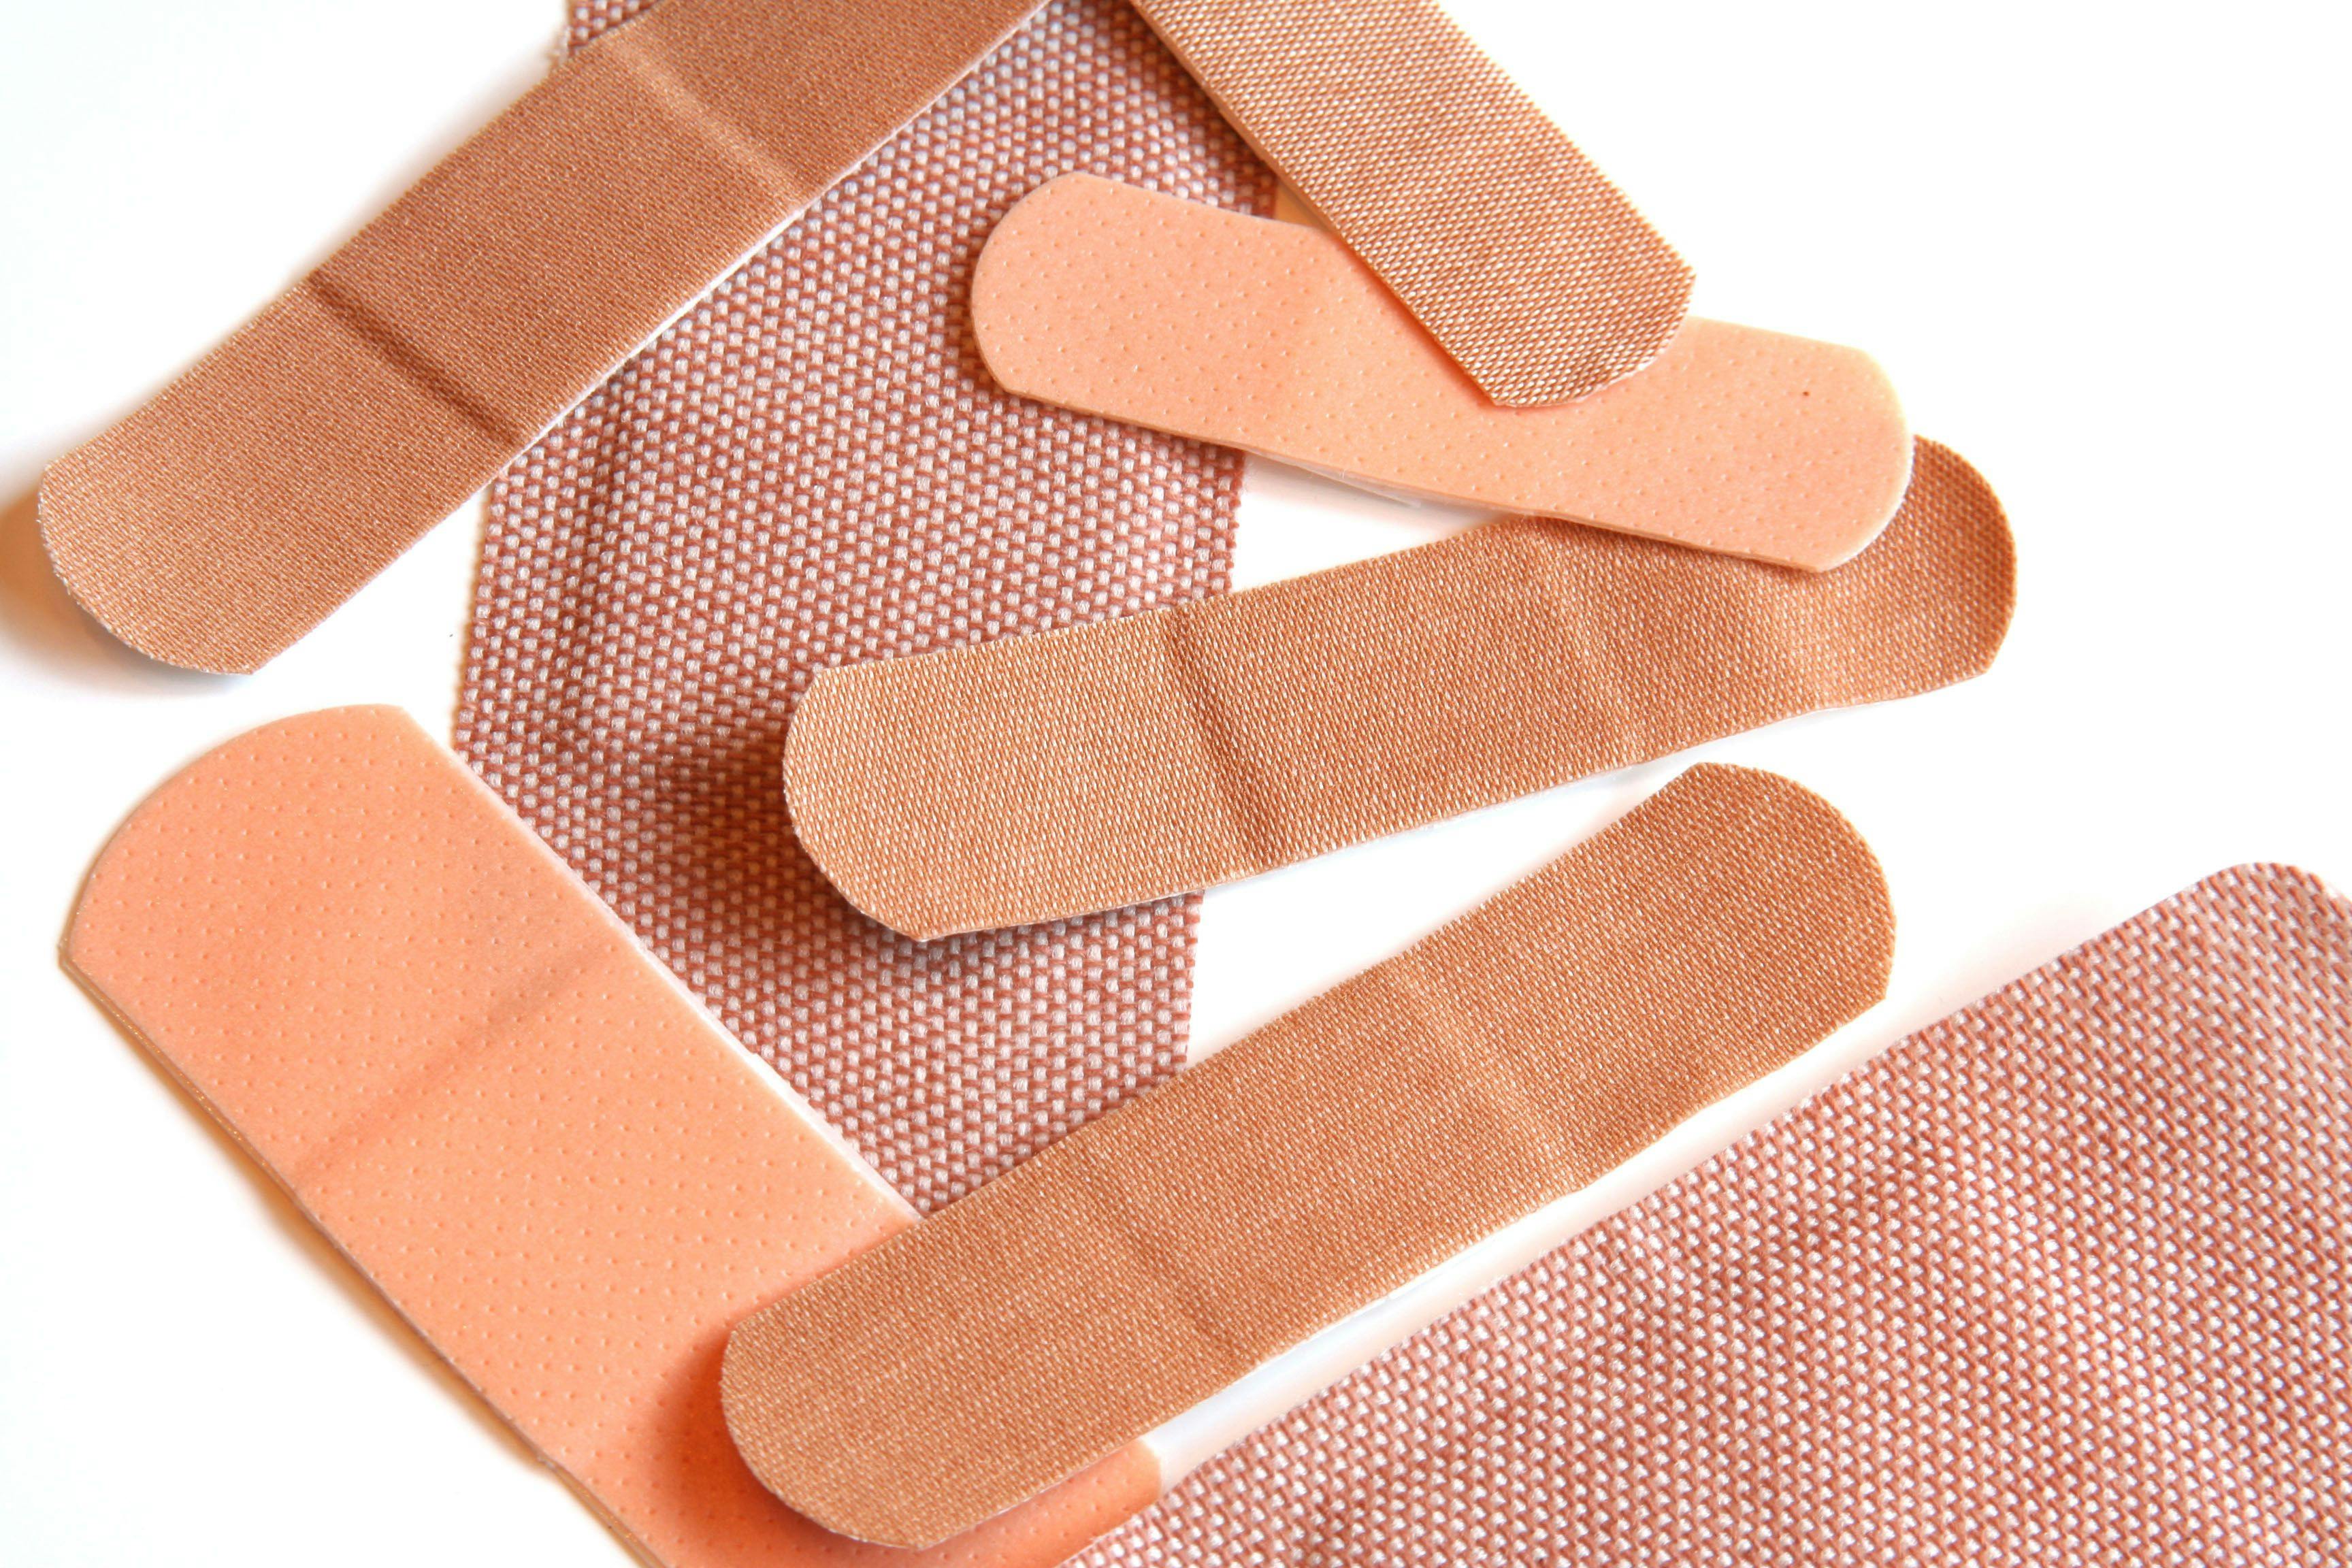 adhesive bandages | © Barbara Helgason - stock.adobe.com